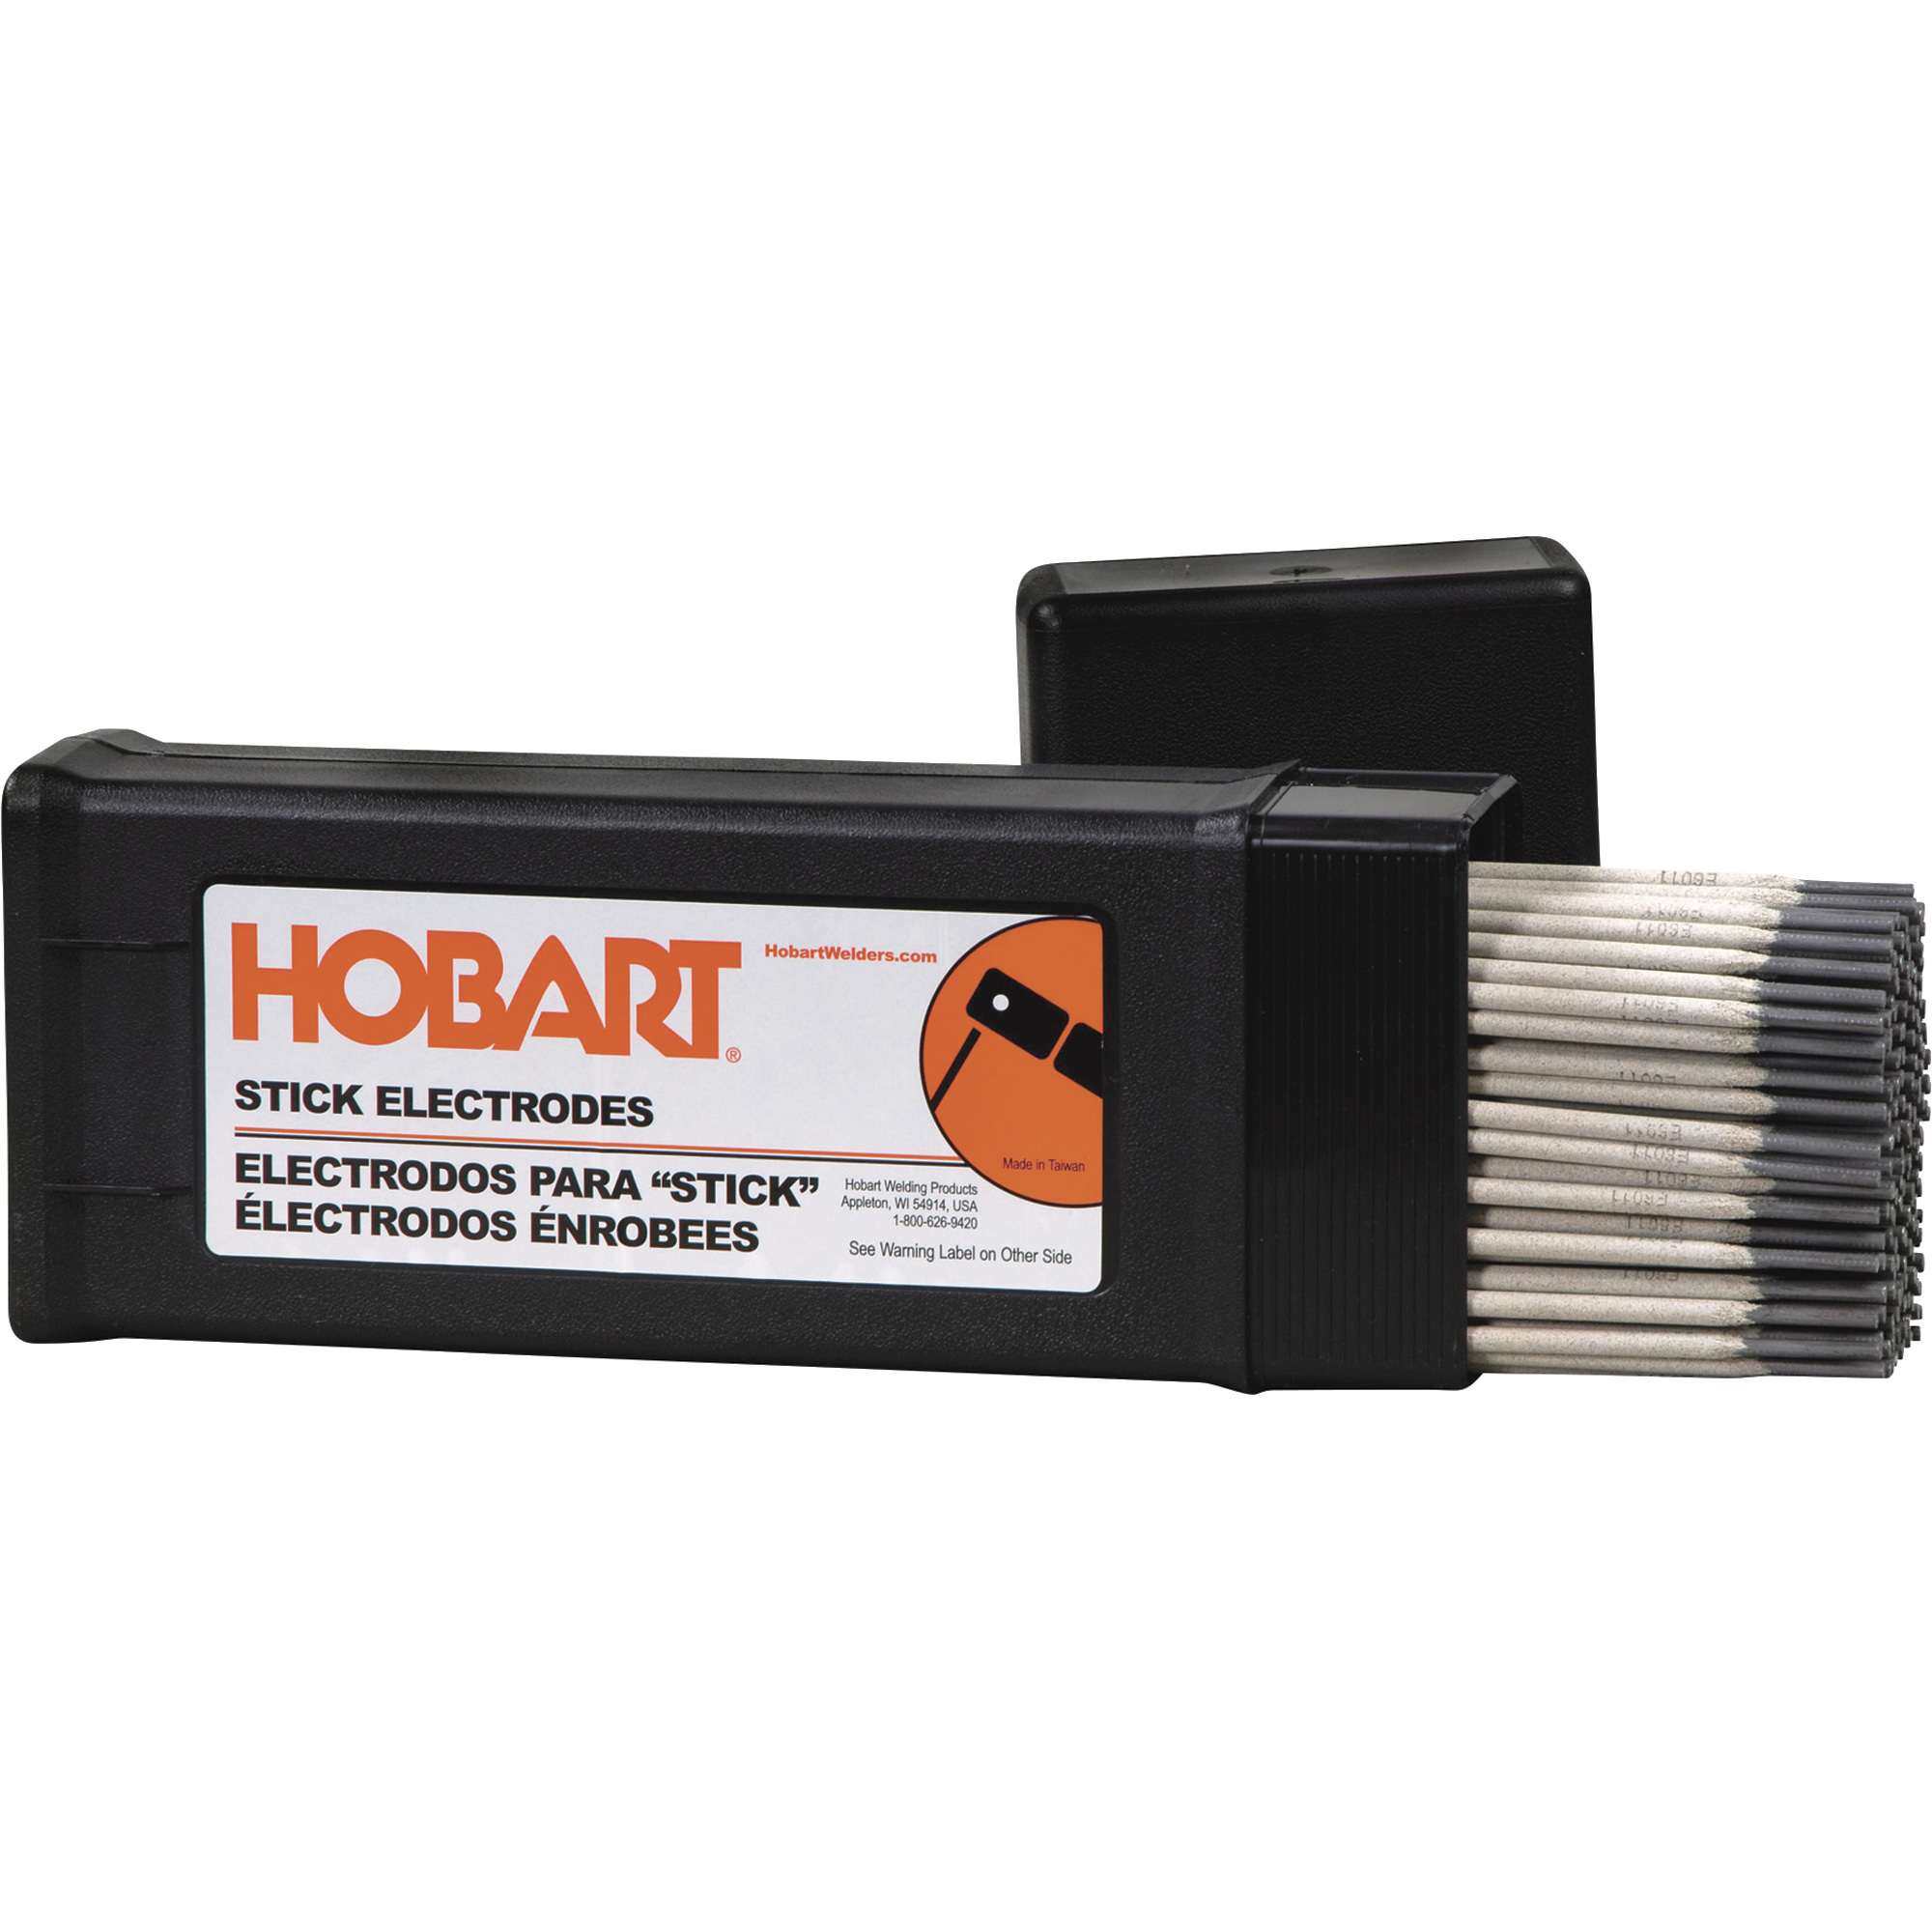 Hobart Filler Metals Stick Welding Electrodes â 7018, 1/8Inch x 14Inch L, 10-Lb. Container, Model 770479